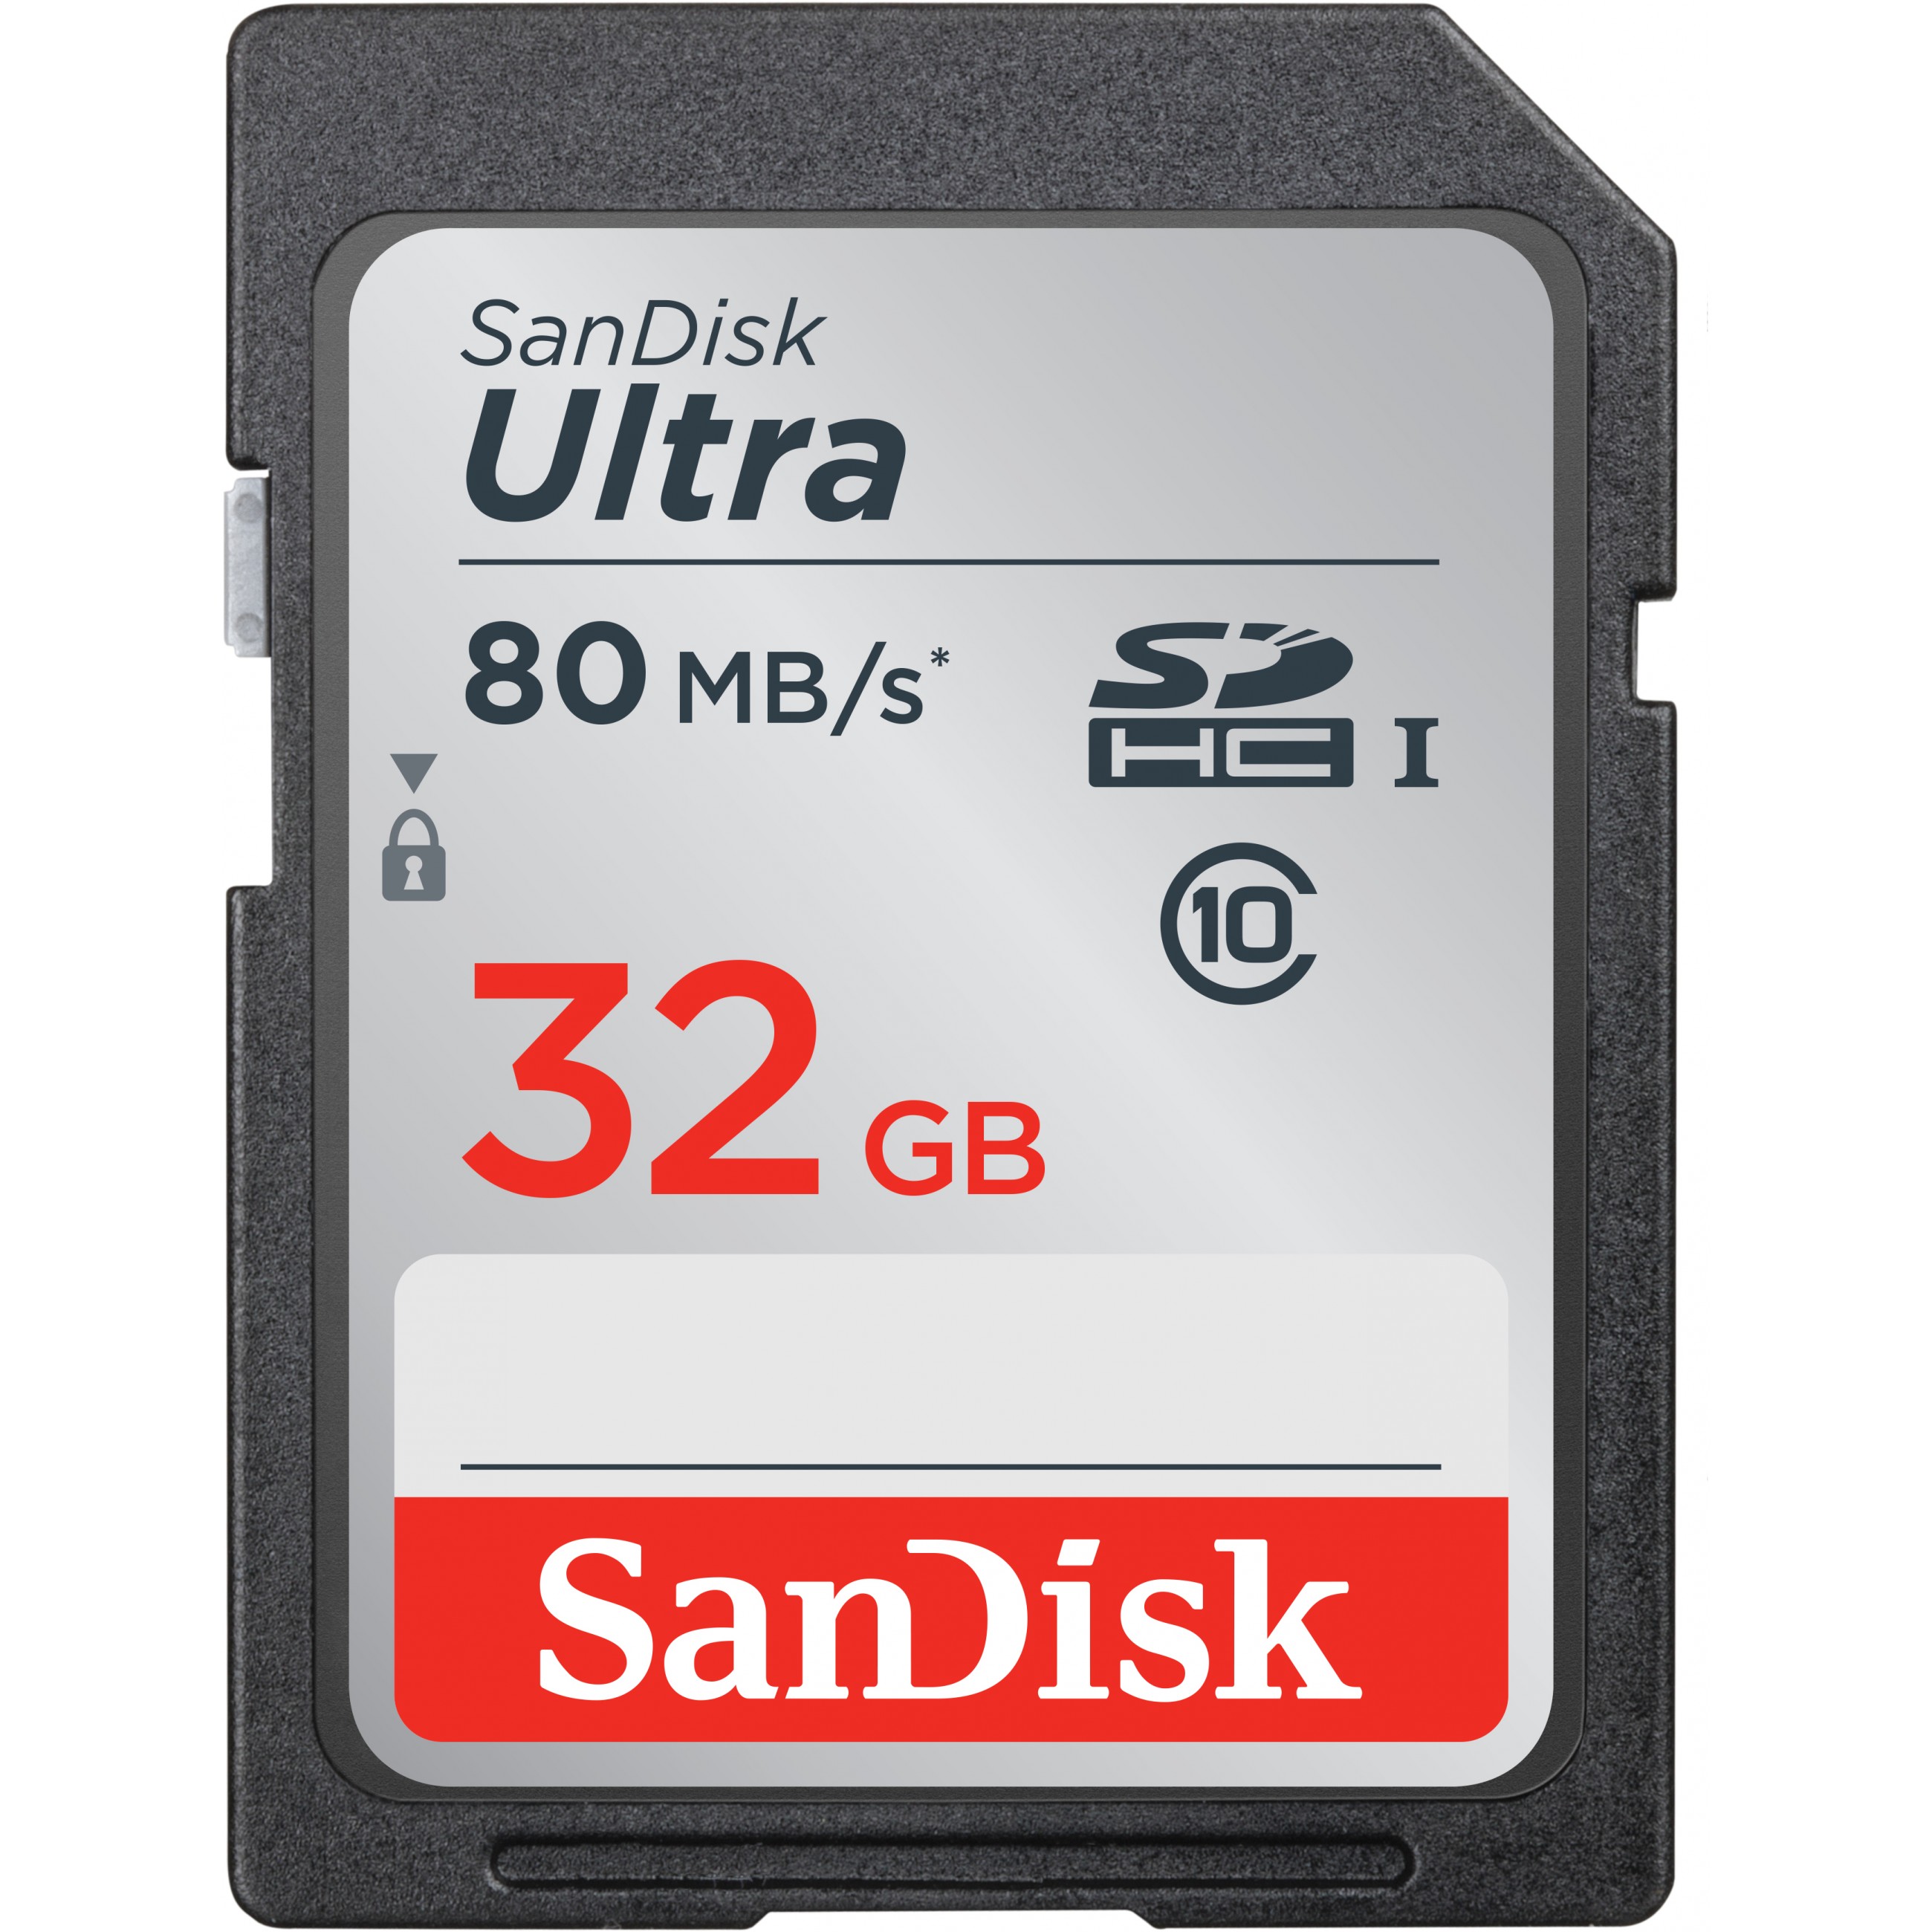 Sandisk Ultra Speicherkarte 32 GB SDHC Klasse 10 UHS-I